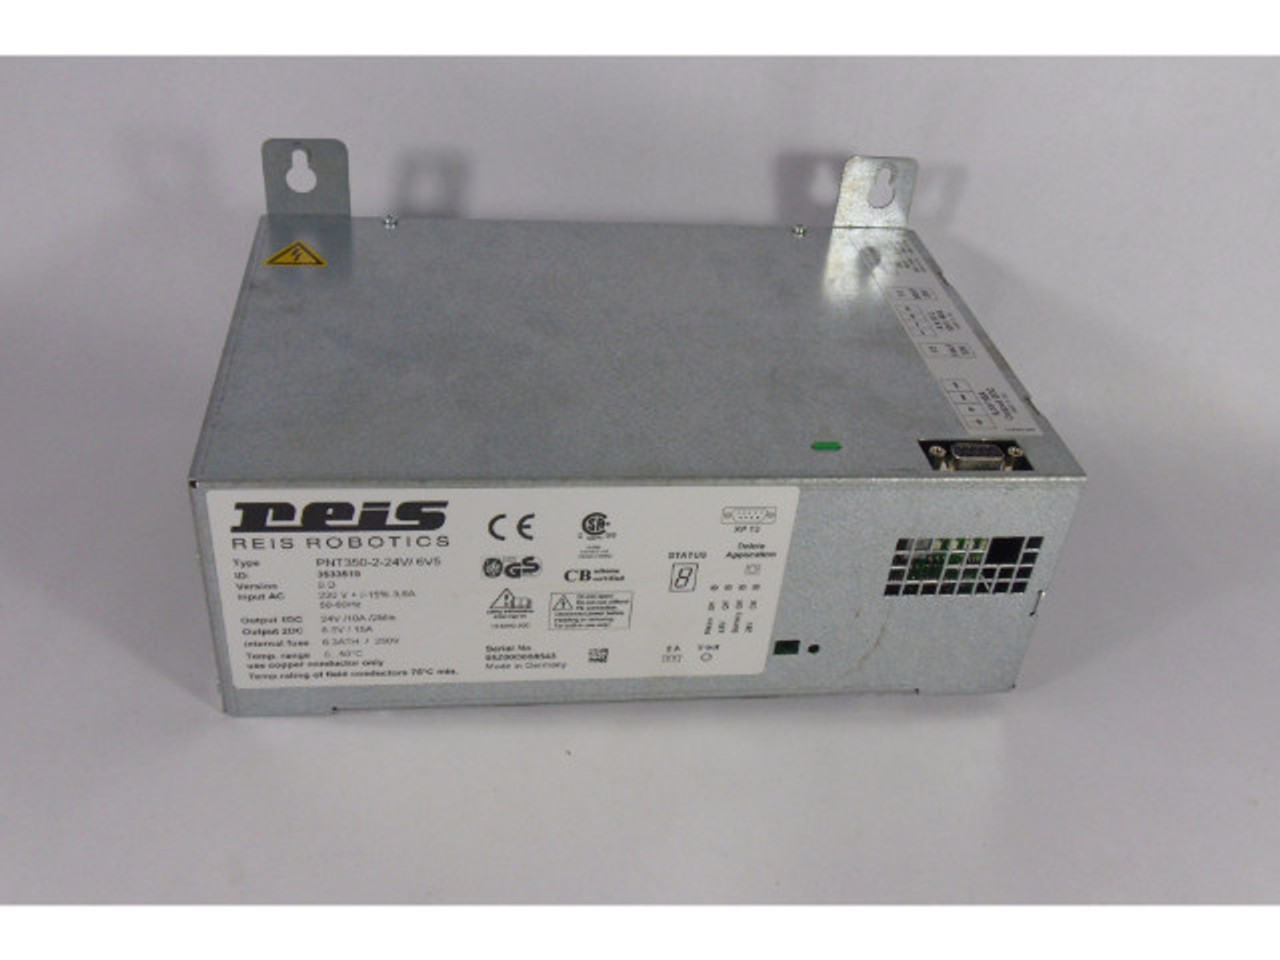 Reis 3533519 PNT350-2-24V/6V5 Robotics Safety Controller USED